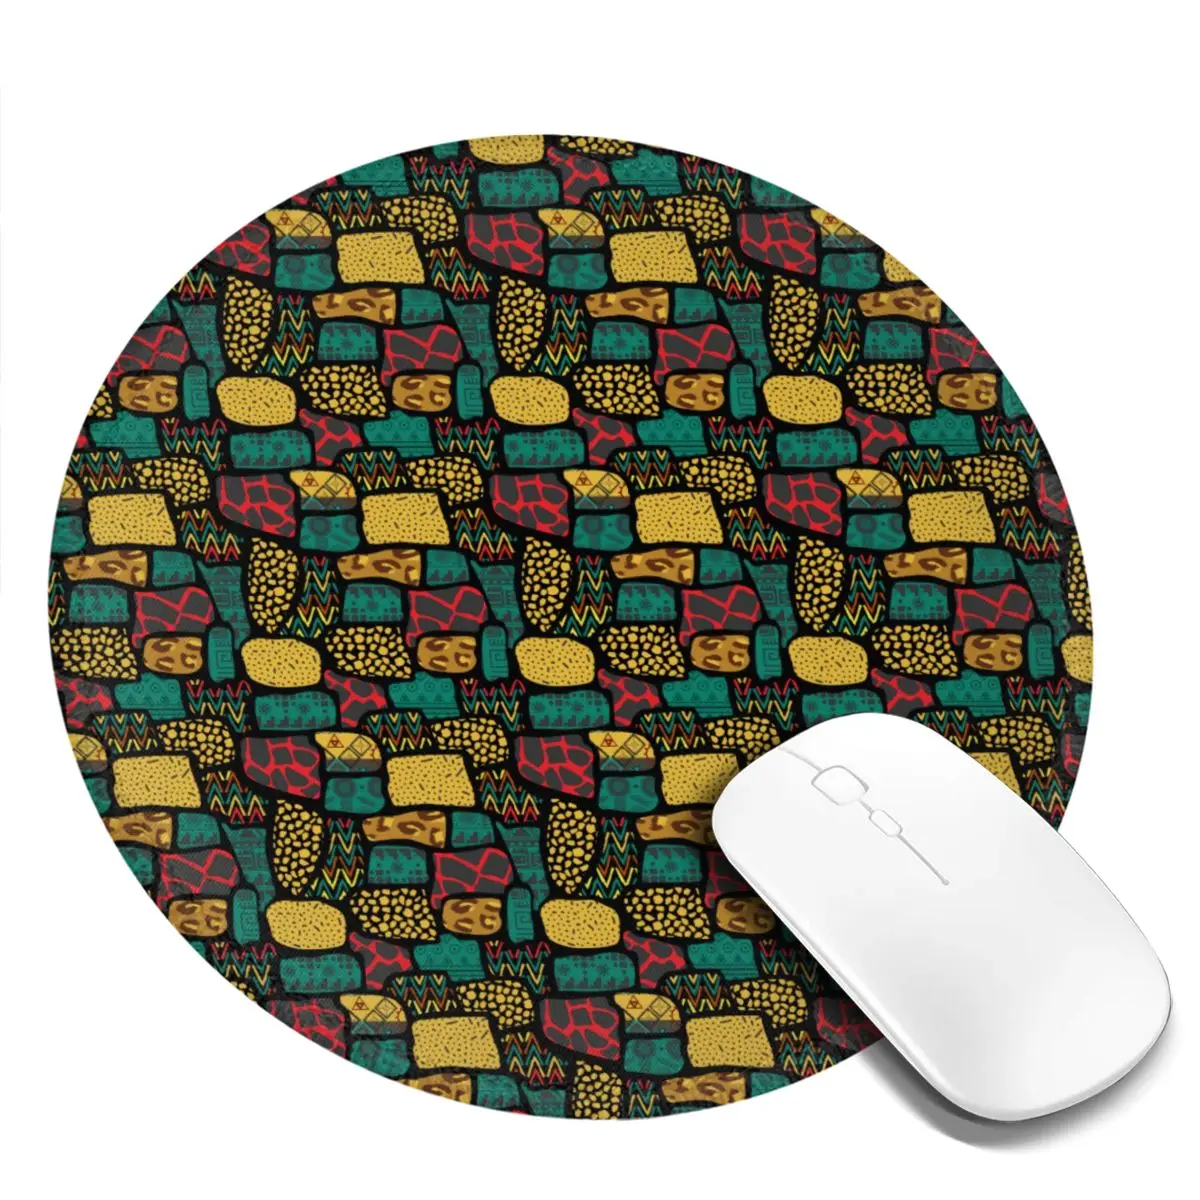 

Африканский разноцветный настольный резиновый коврик для мыши в стиле пэчворк, цветной Противоскользящий коврик для мыши с лучшим изображением